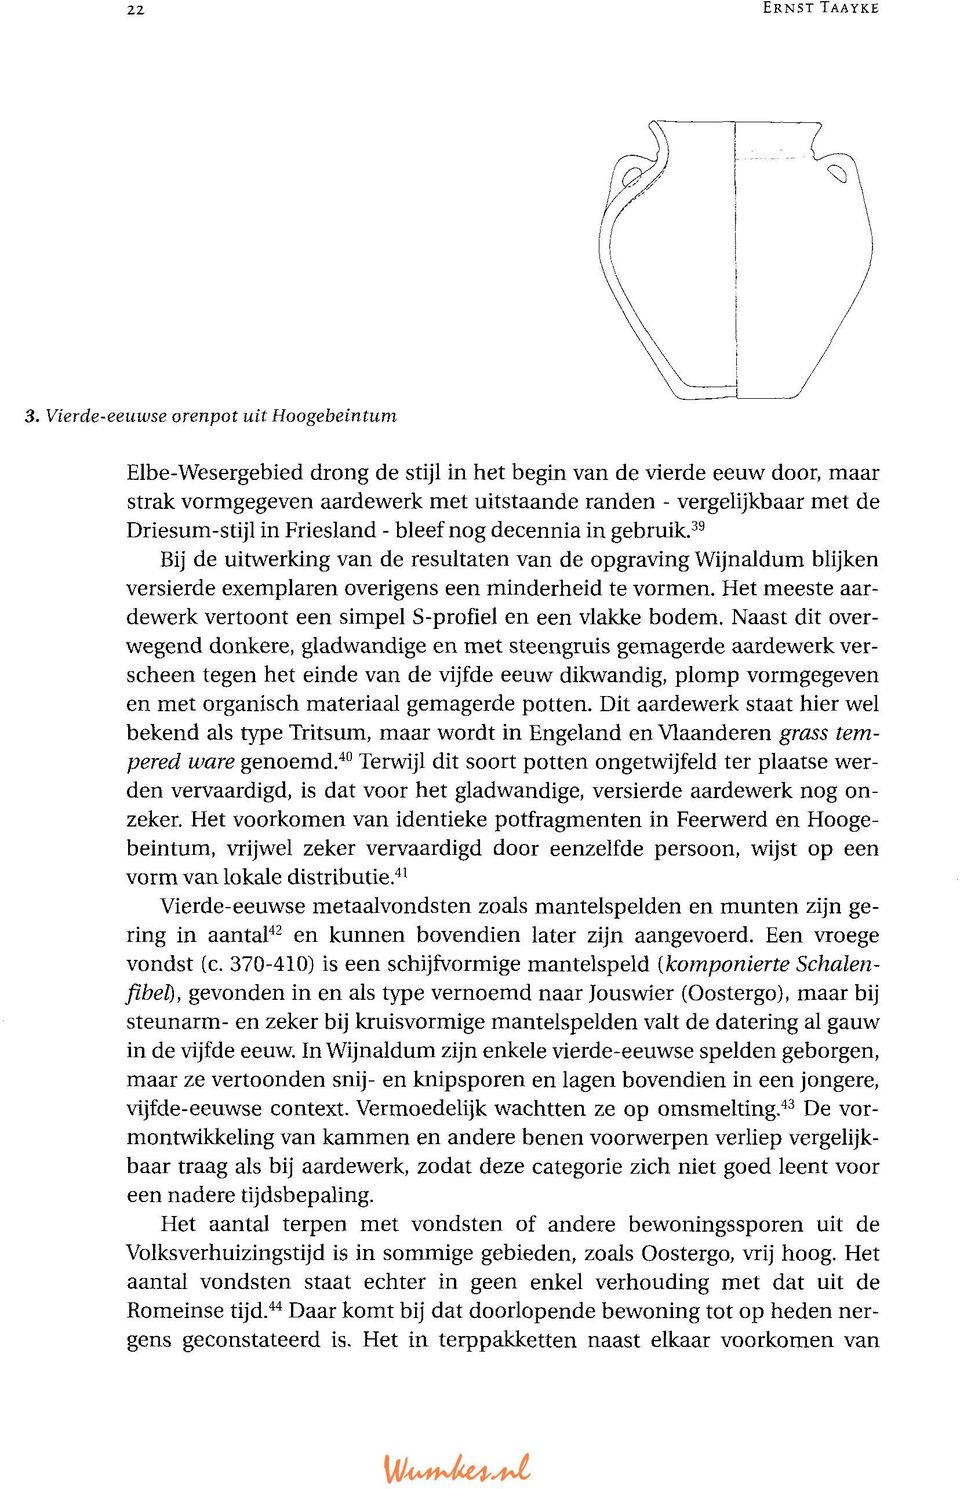 Driesum-stijl in Friesland - bleef nog decennia in gebruik. 39 Bij de uitwerking van de resultaten van de opgraving Wijnaldum blijken versierde exemplaren overigens een minderheid te vormen.